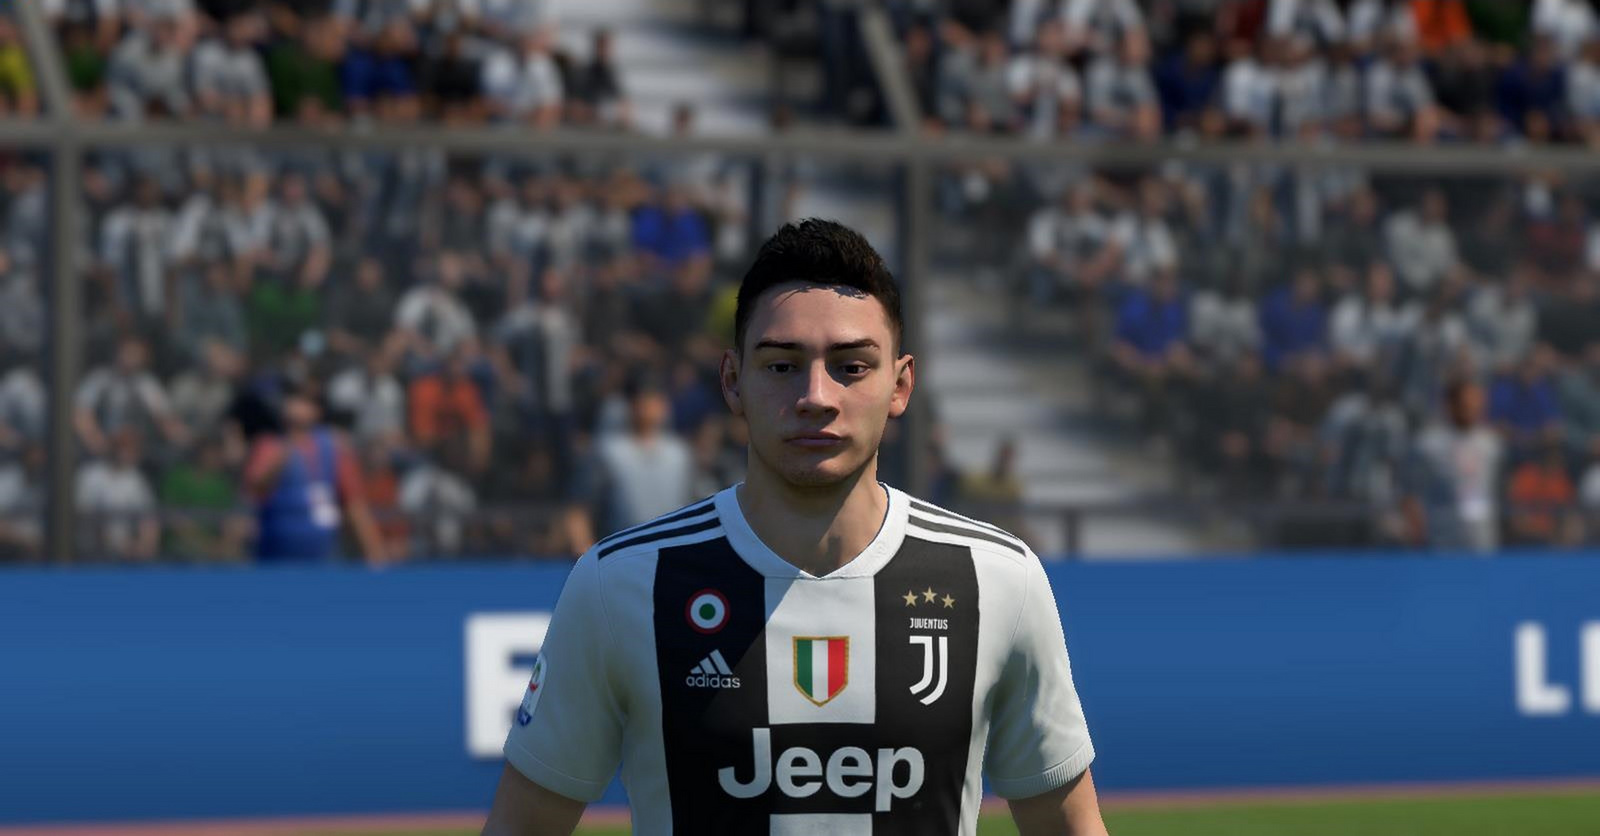 Juventus De Sciglio